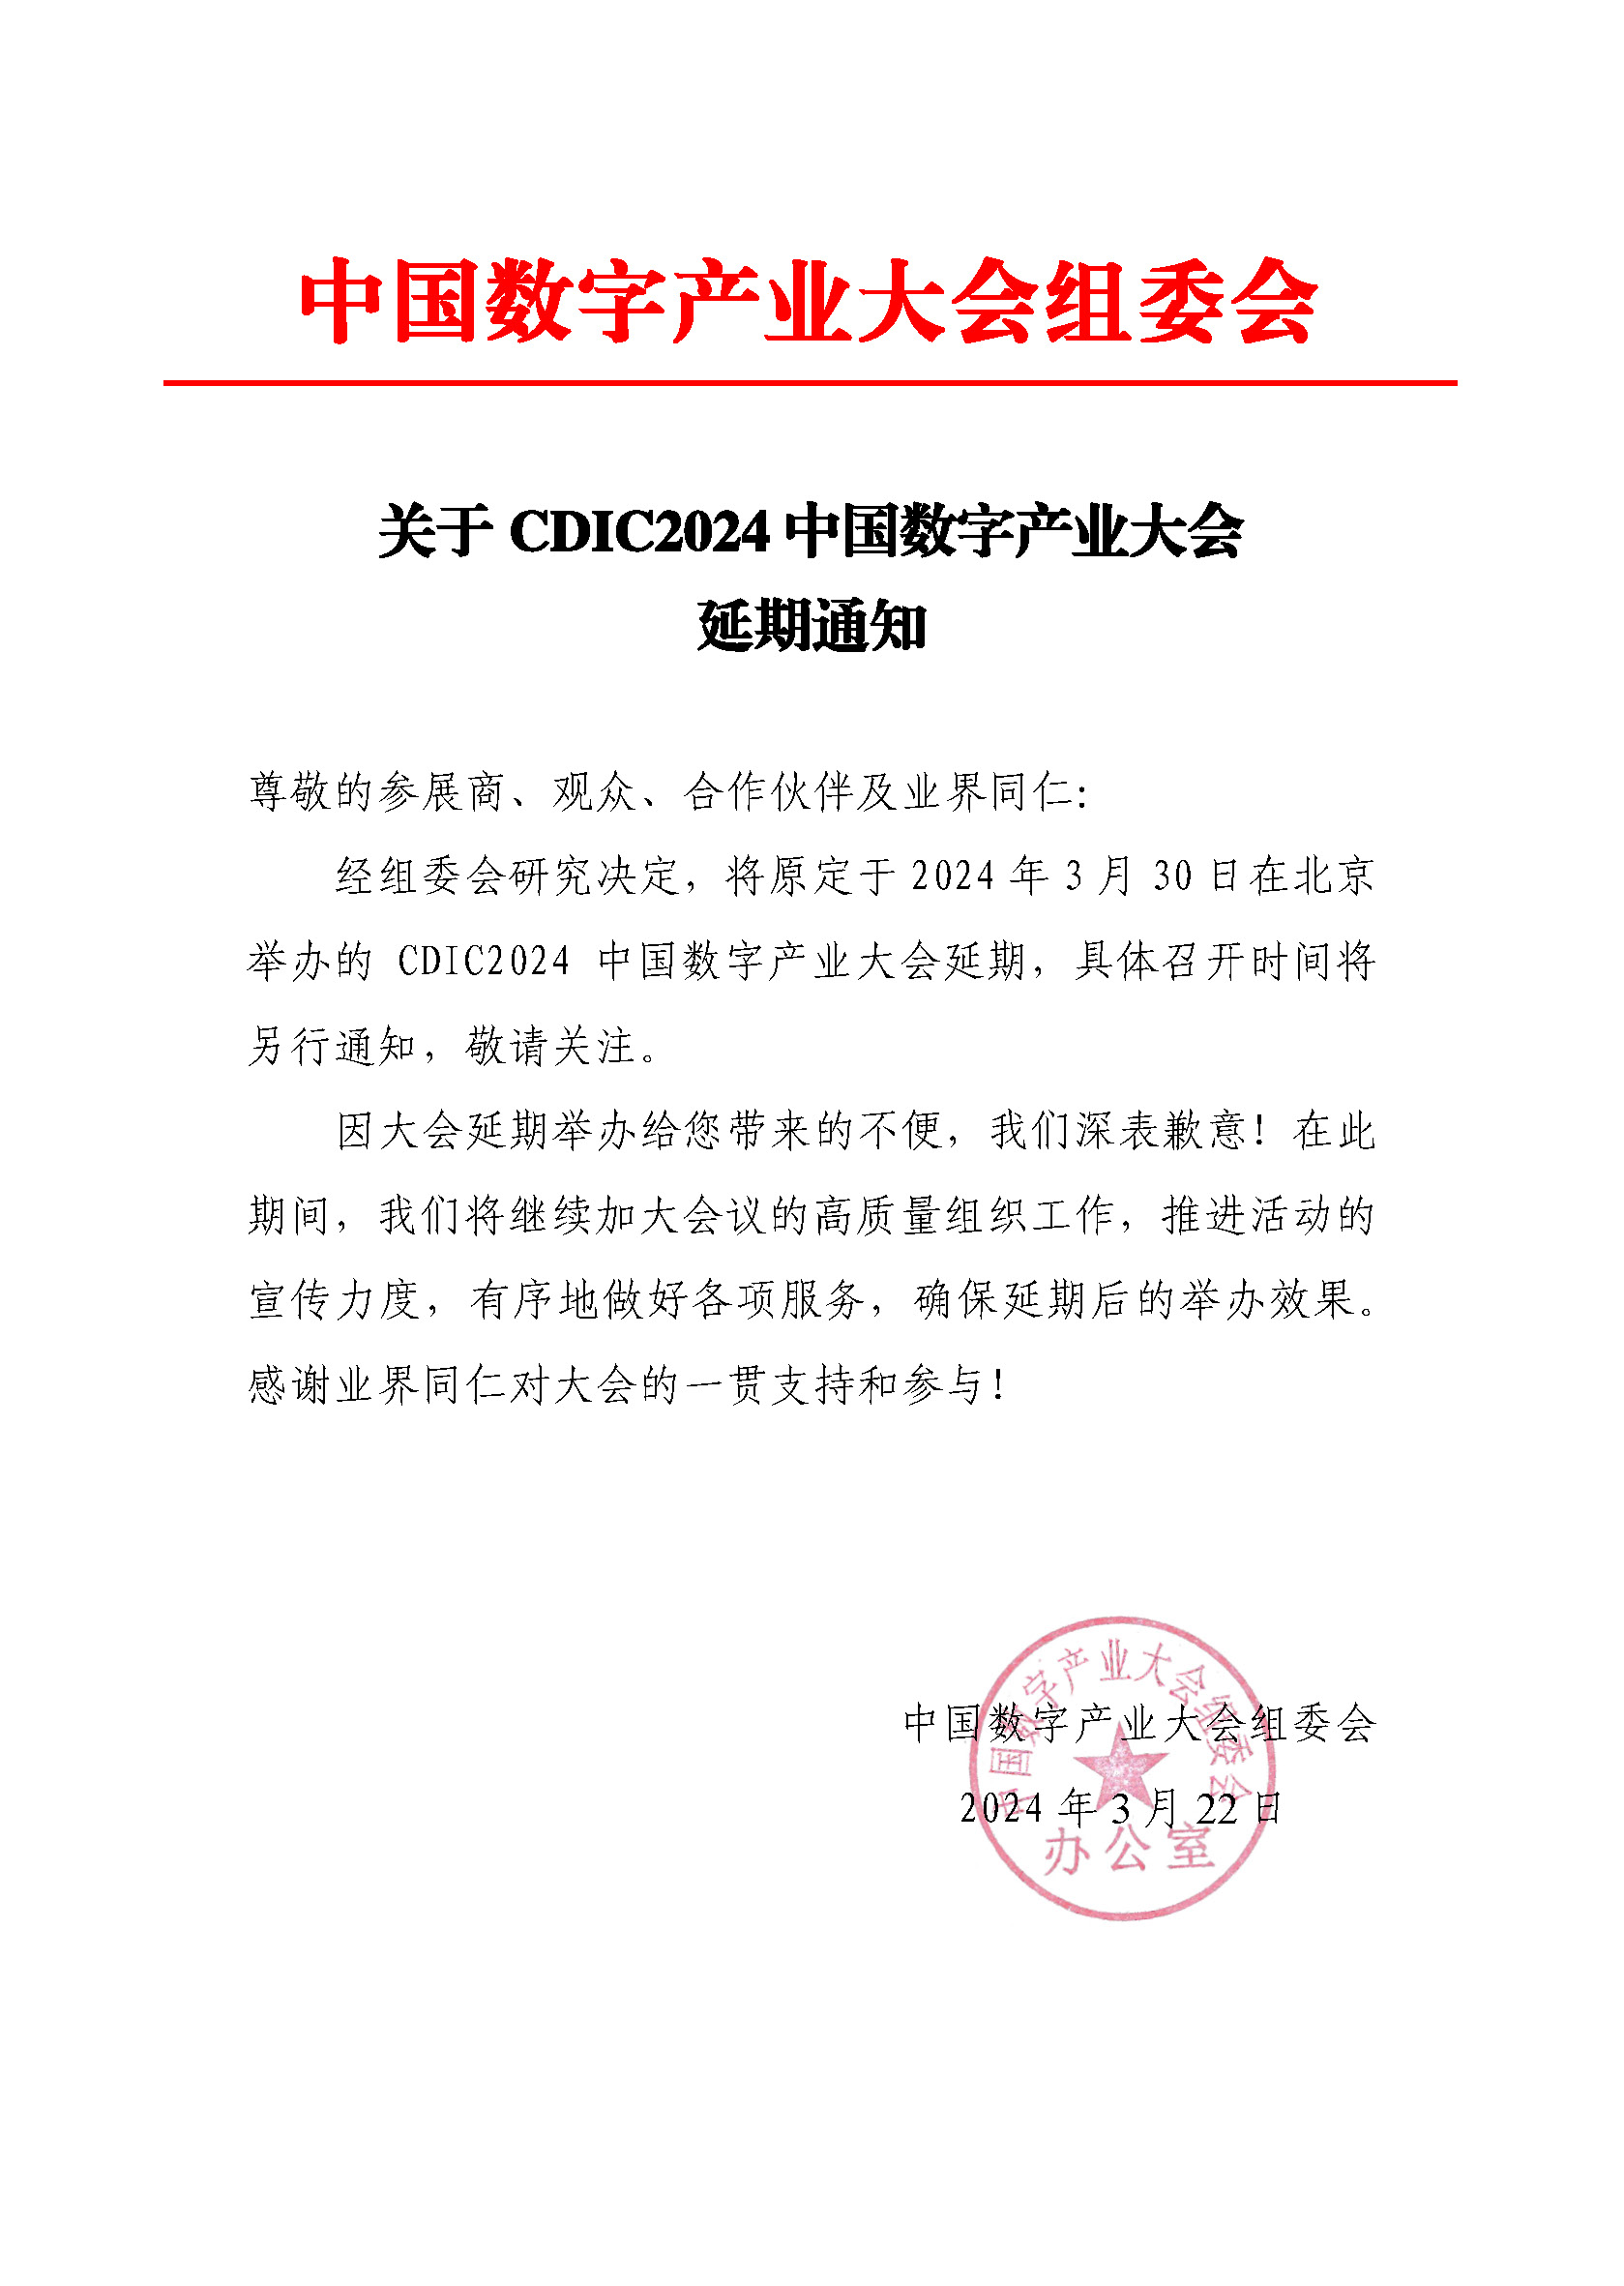 CDIC2024第二届中国数字产业大会